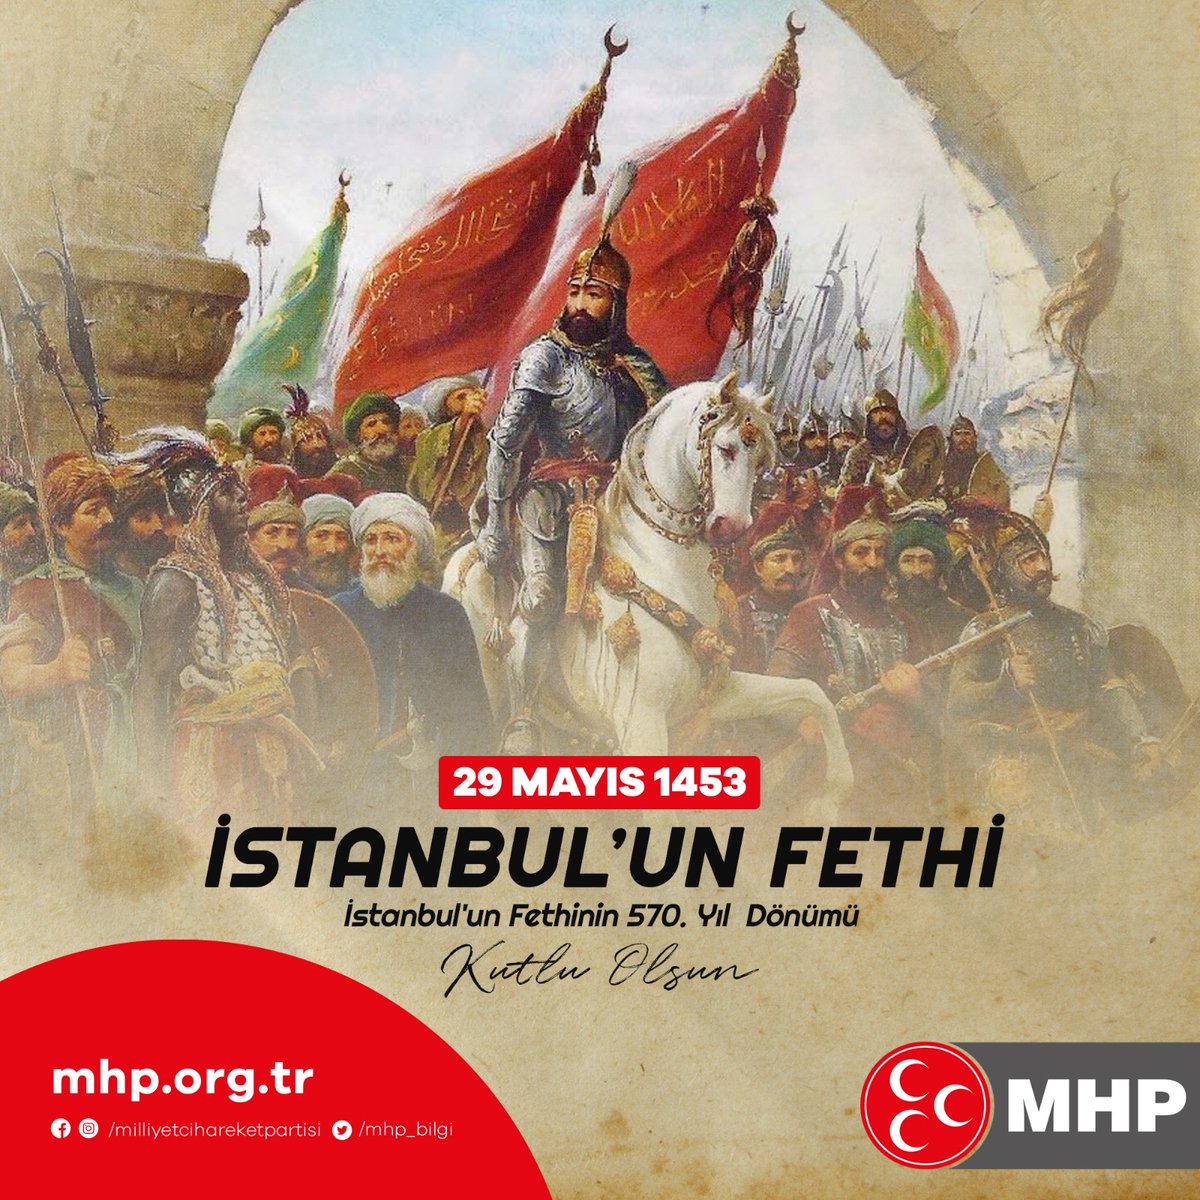 İstanbul’un Fethinin 570. Yıl Dönümü Kutlu Olsun